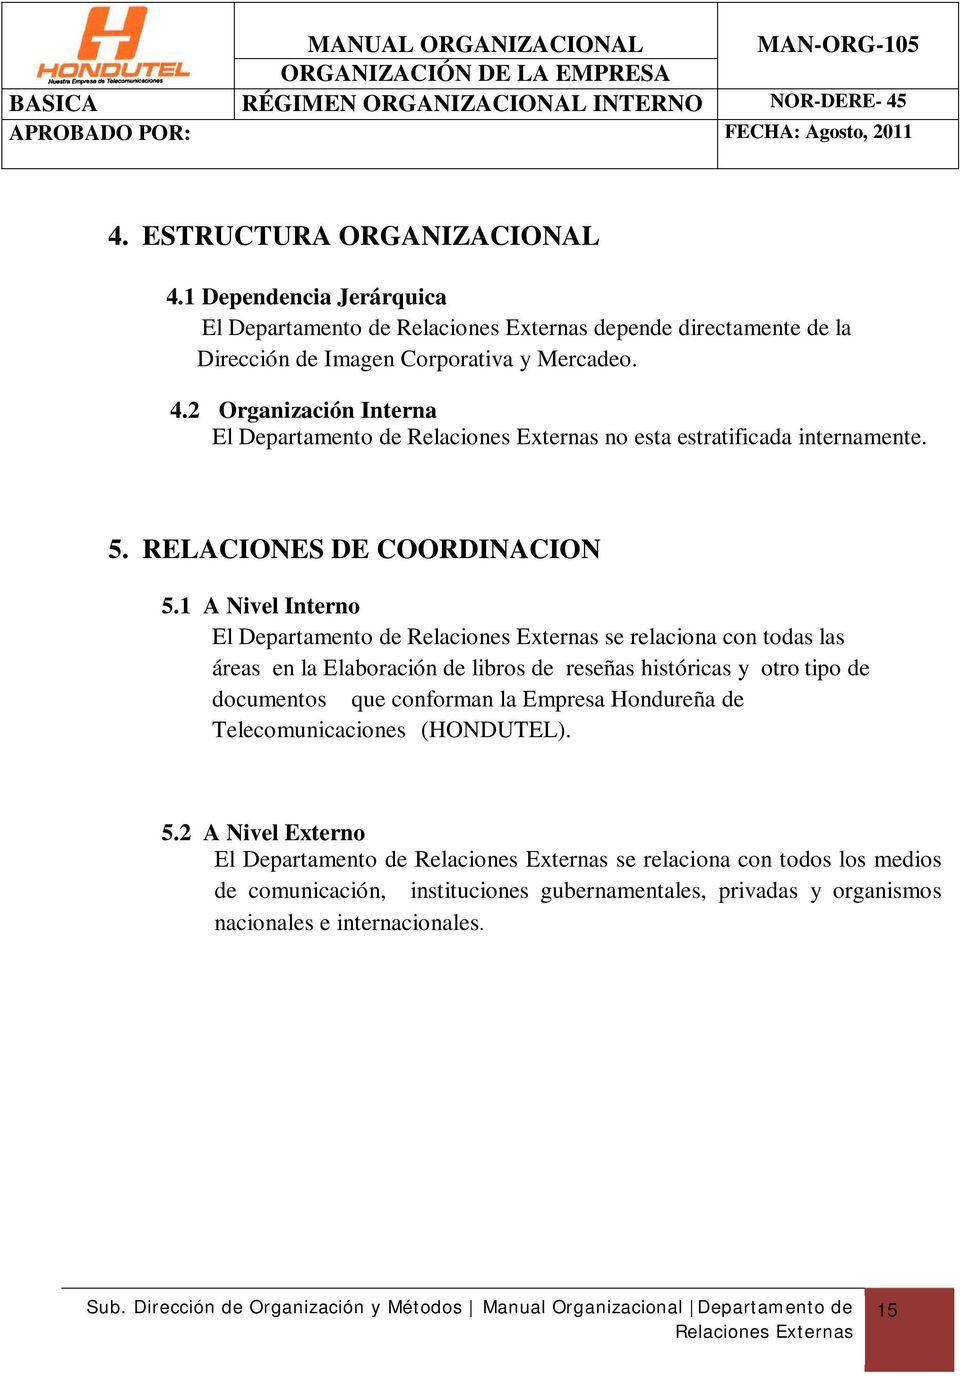 2 Organización Interna El Departamento de Relaciones Externas no esta estratificada internamente. 5. RELACIONES DE COORDINACION 5.